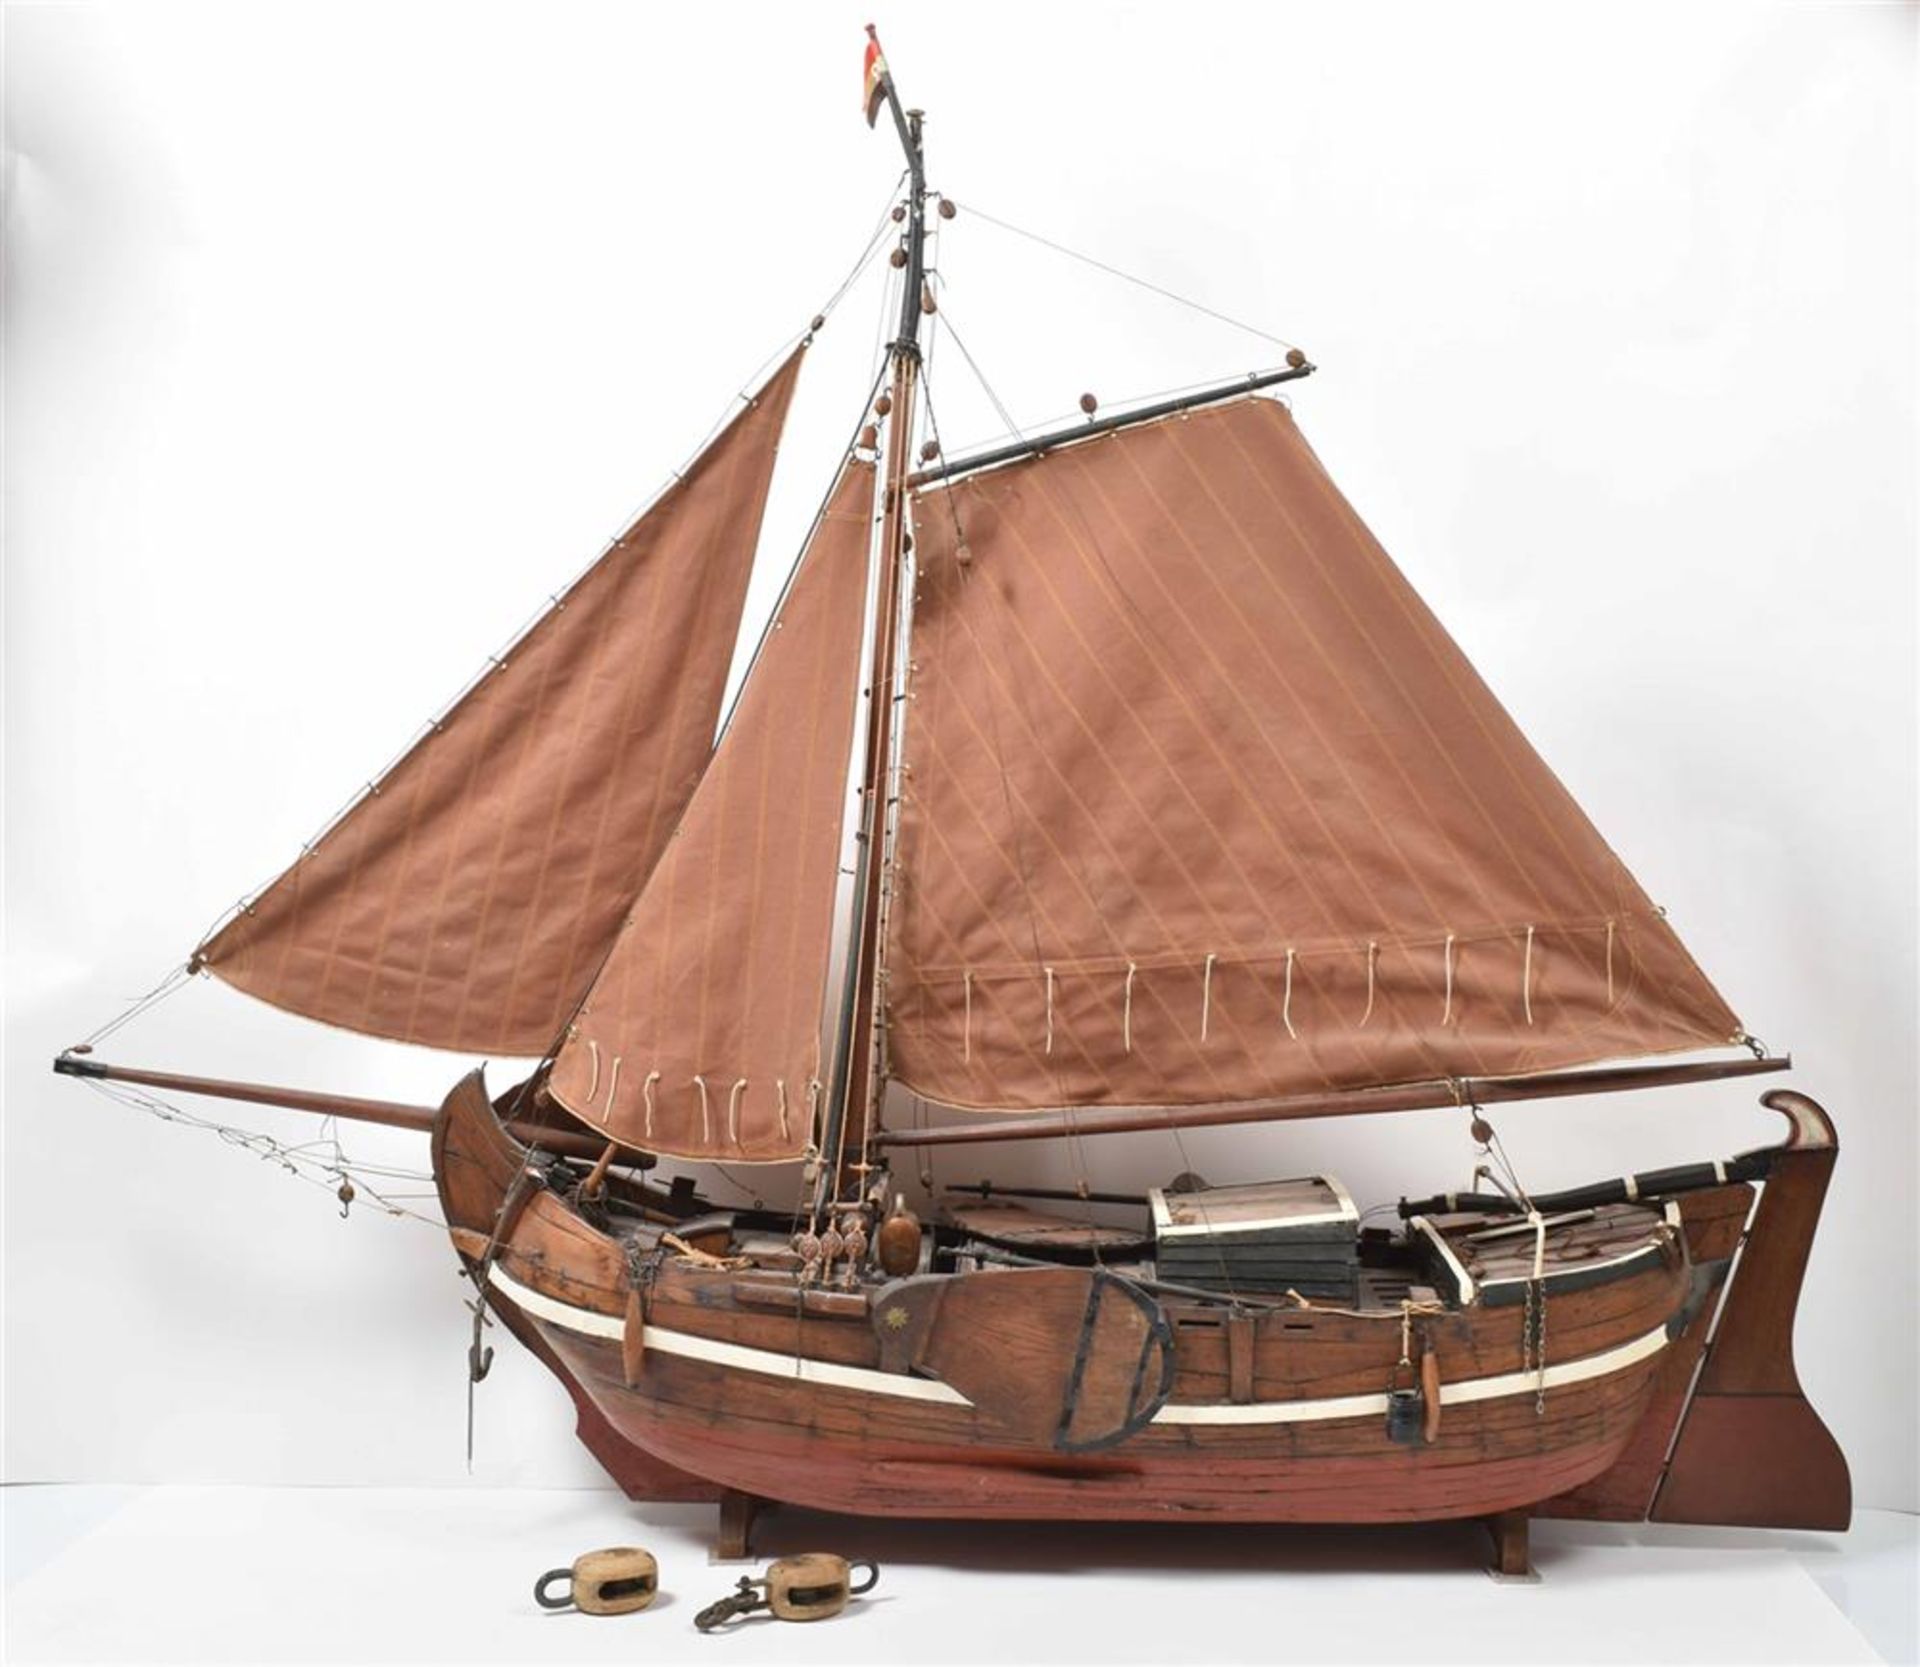 [Model ships] Botter fishing vessel model